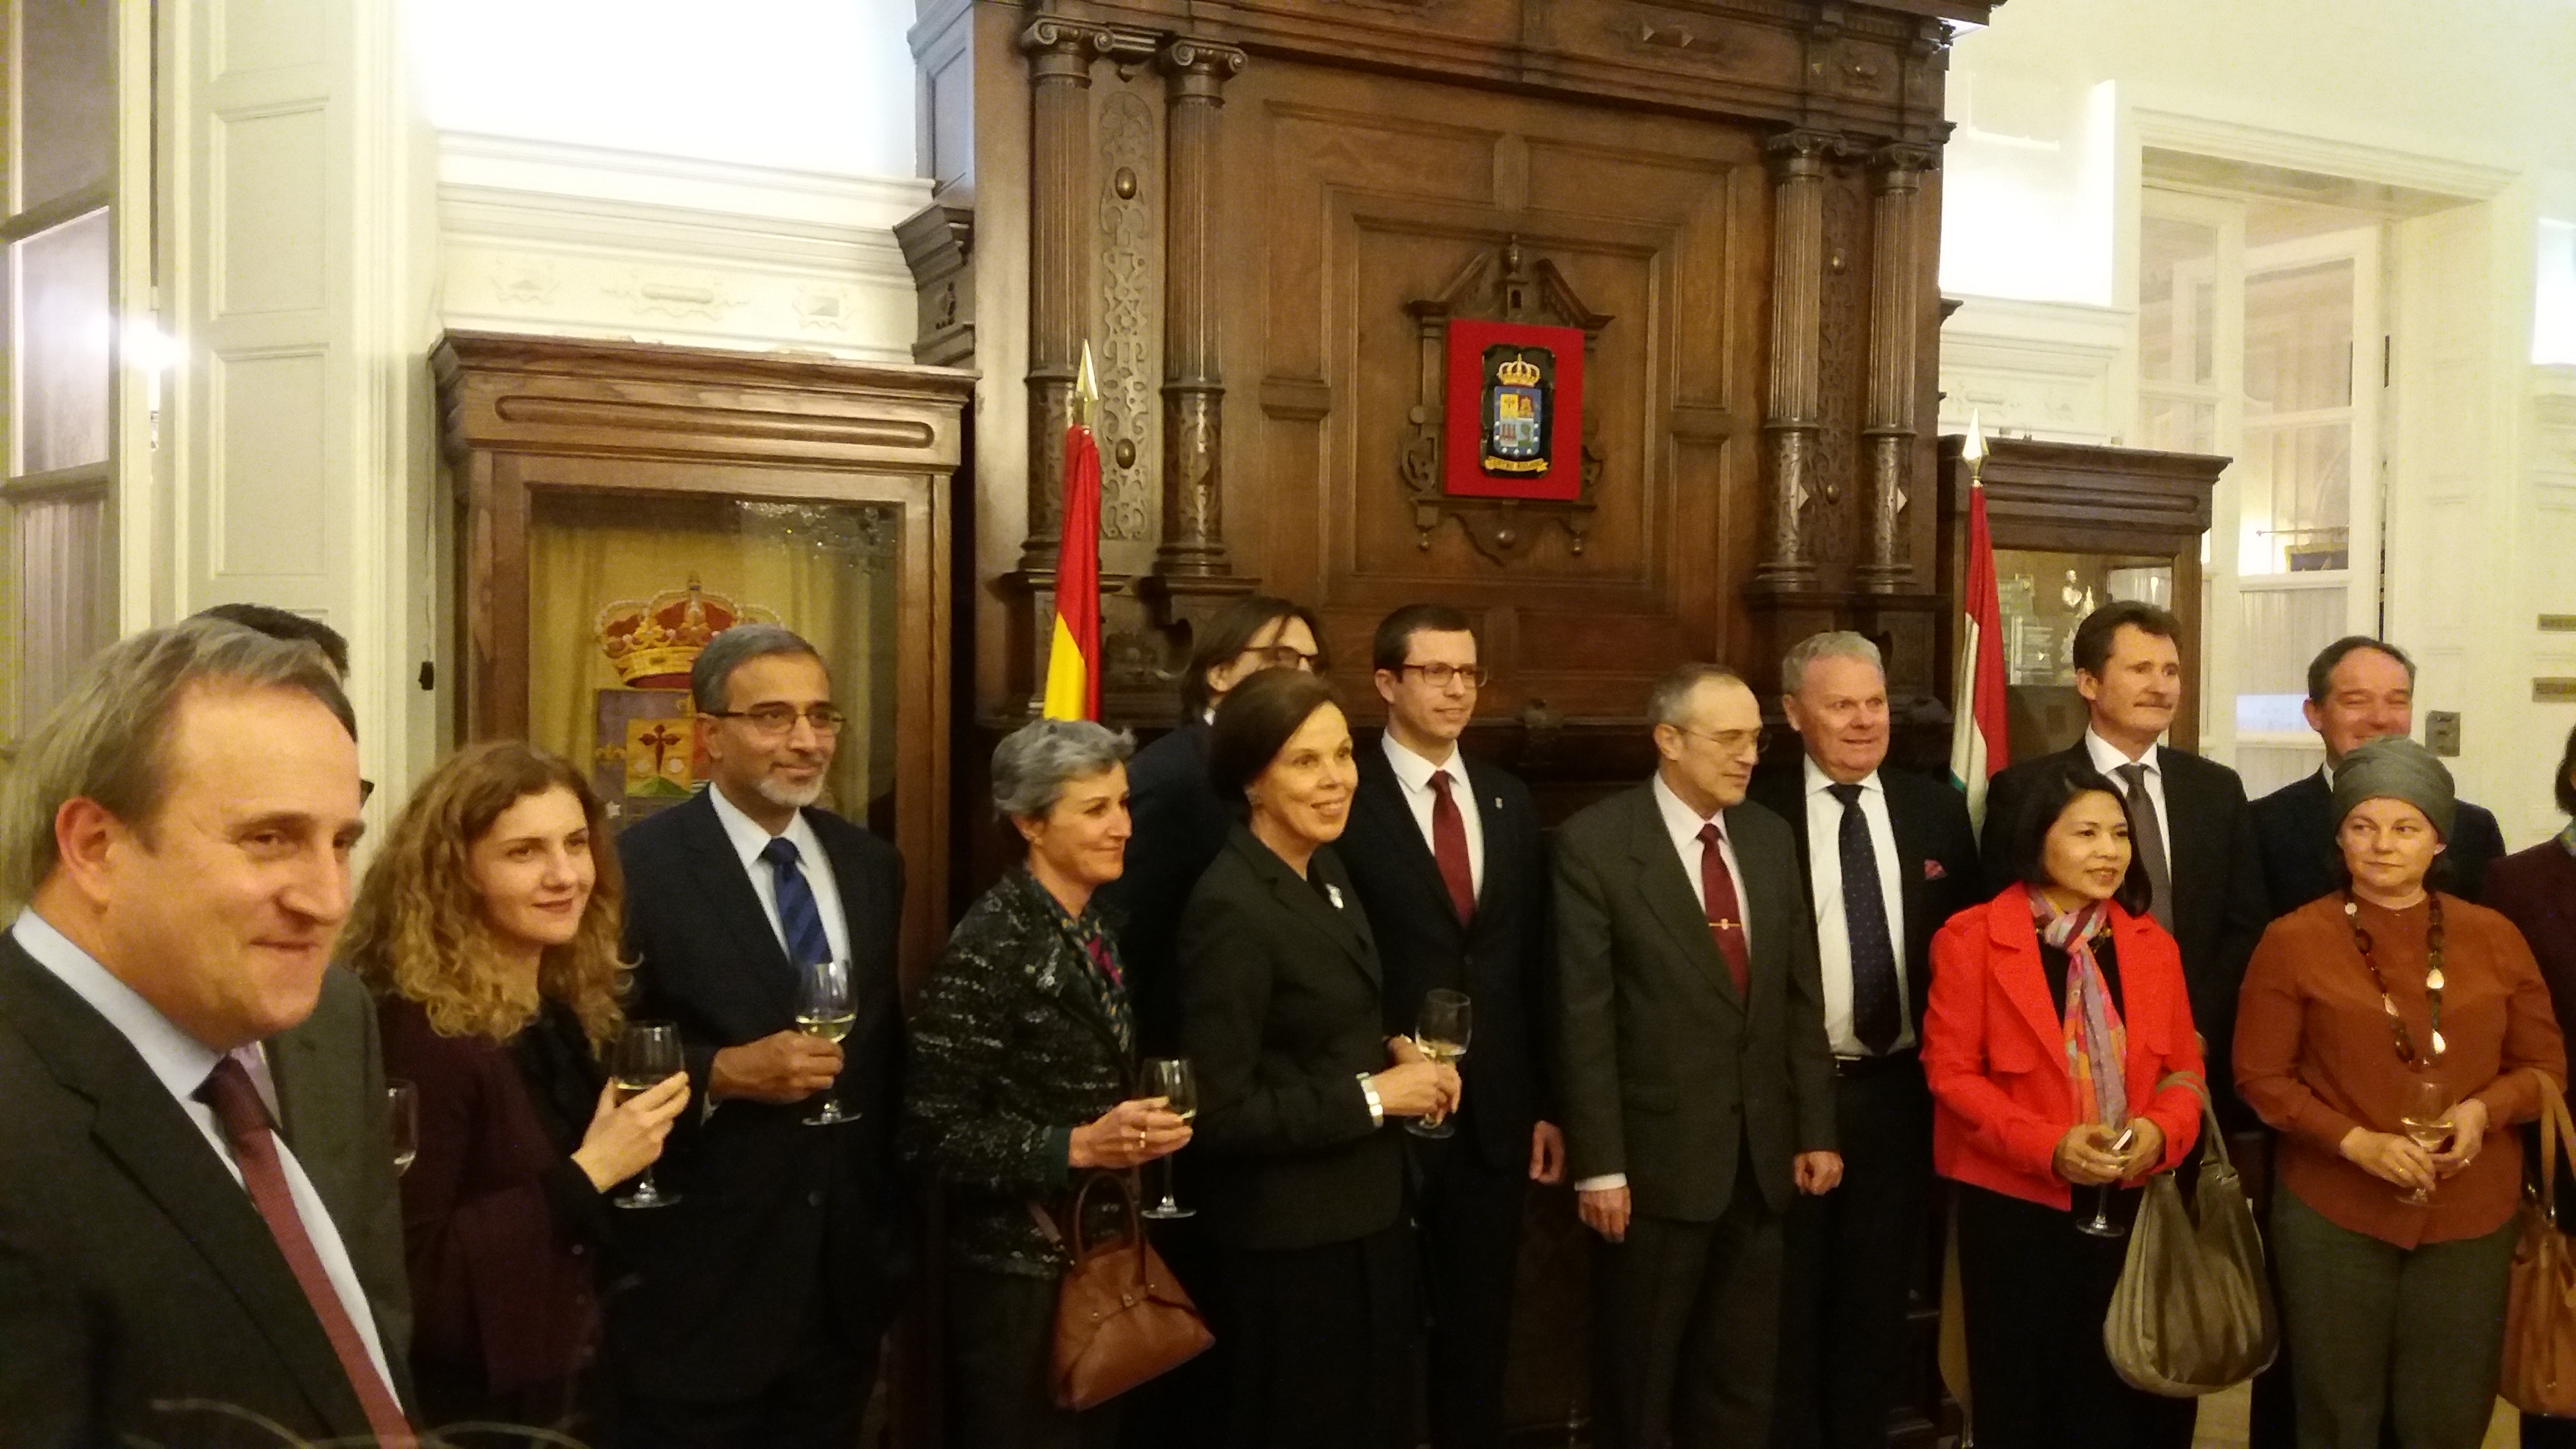 El Centro Riojano de Madrid, celebra la Segunda Cata de los Embajadores